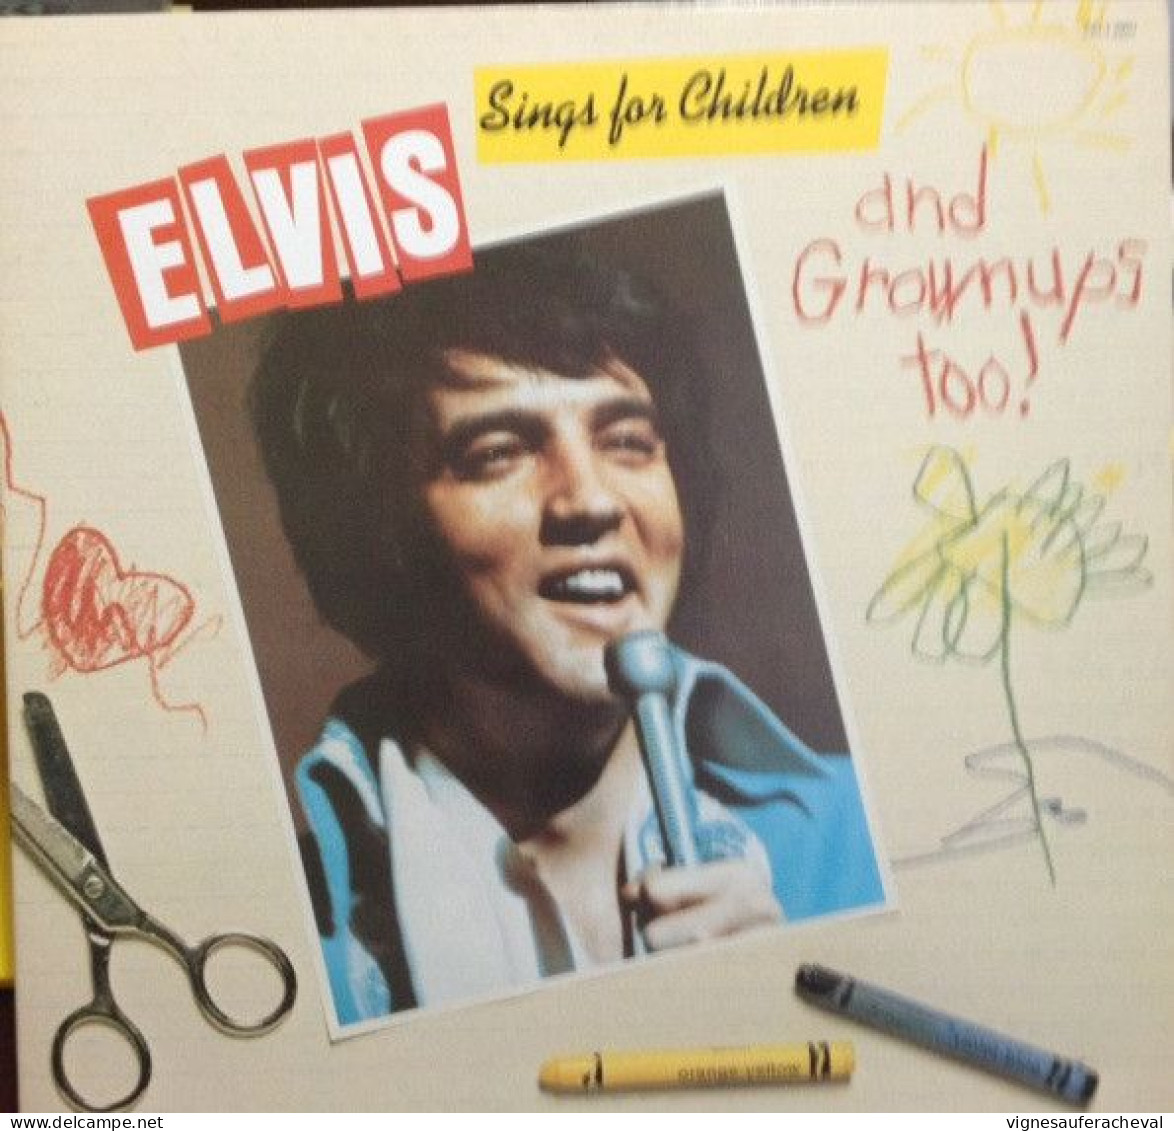 Elvis Presley - Elvis Sings For Children And Grownups Too!! - Andere - Engelstalig